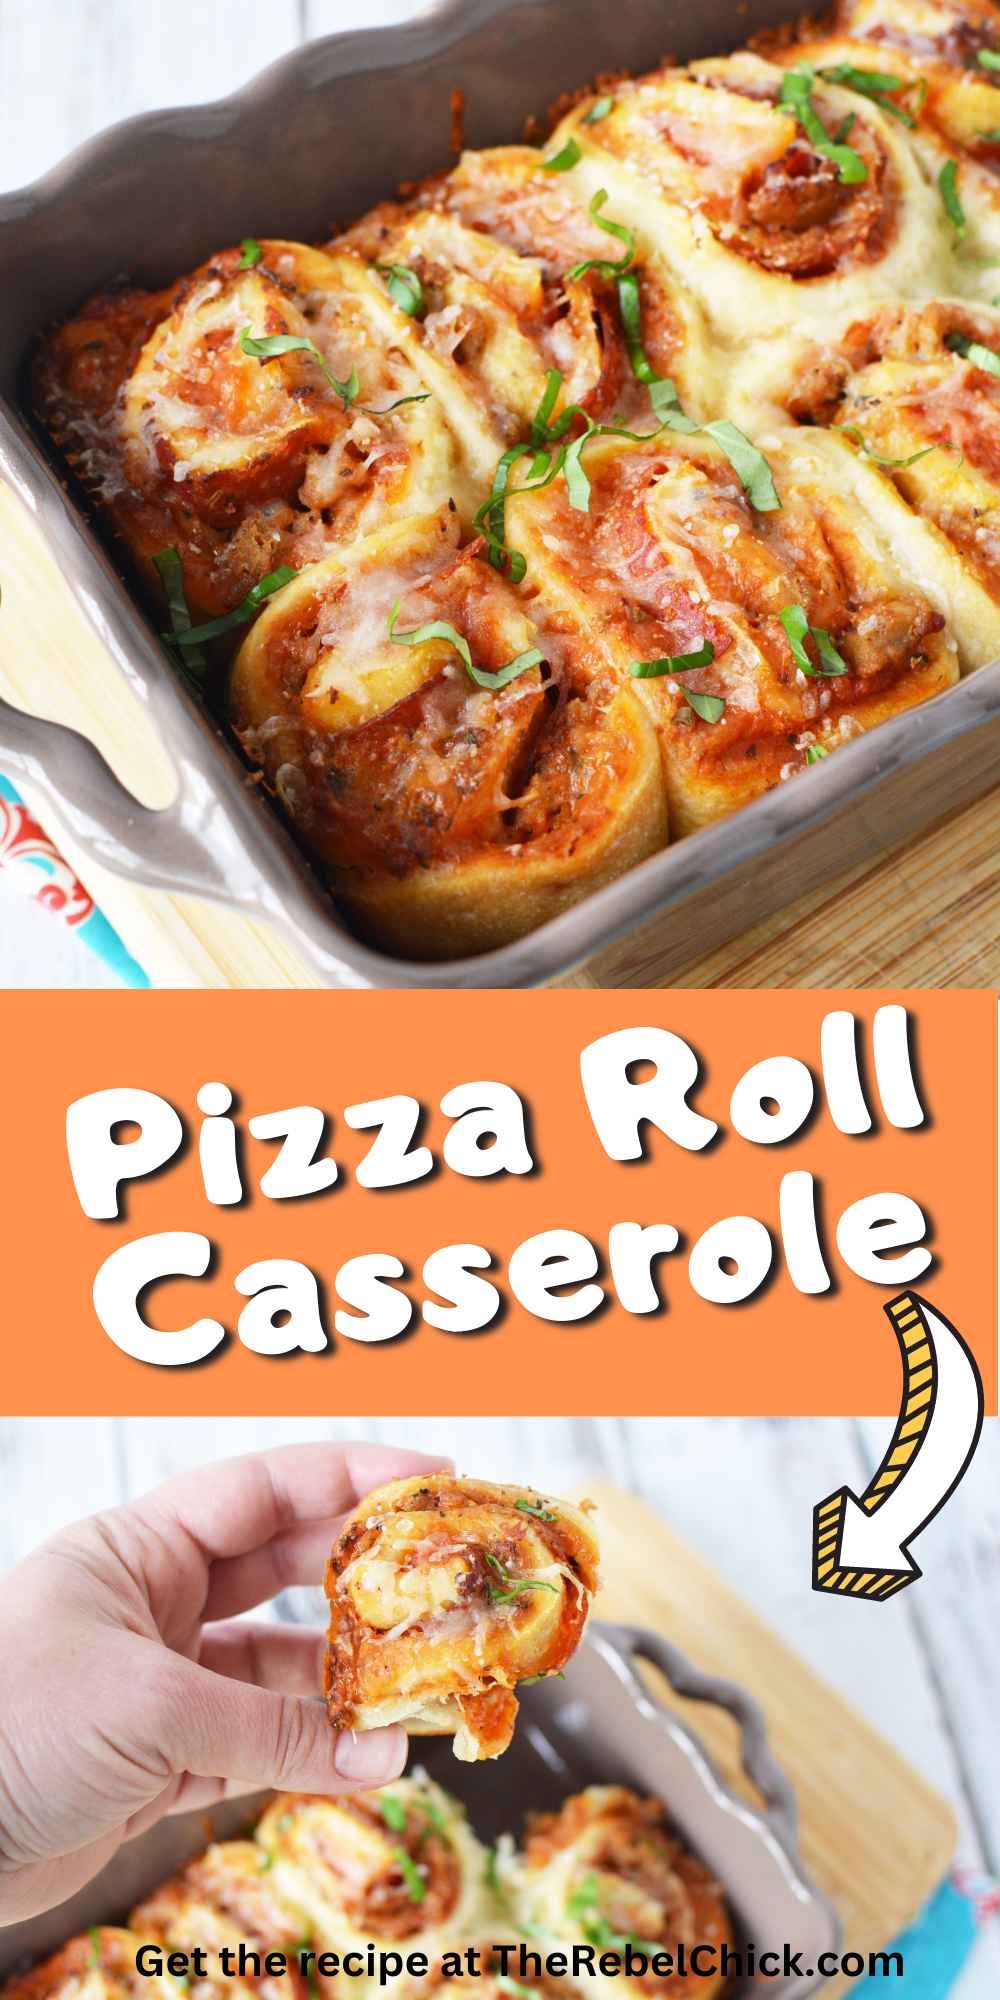 Pizza Roll Casserole Recipe